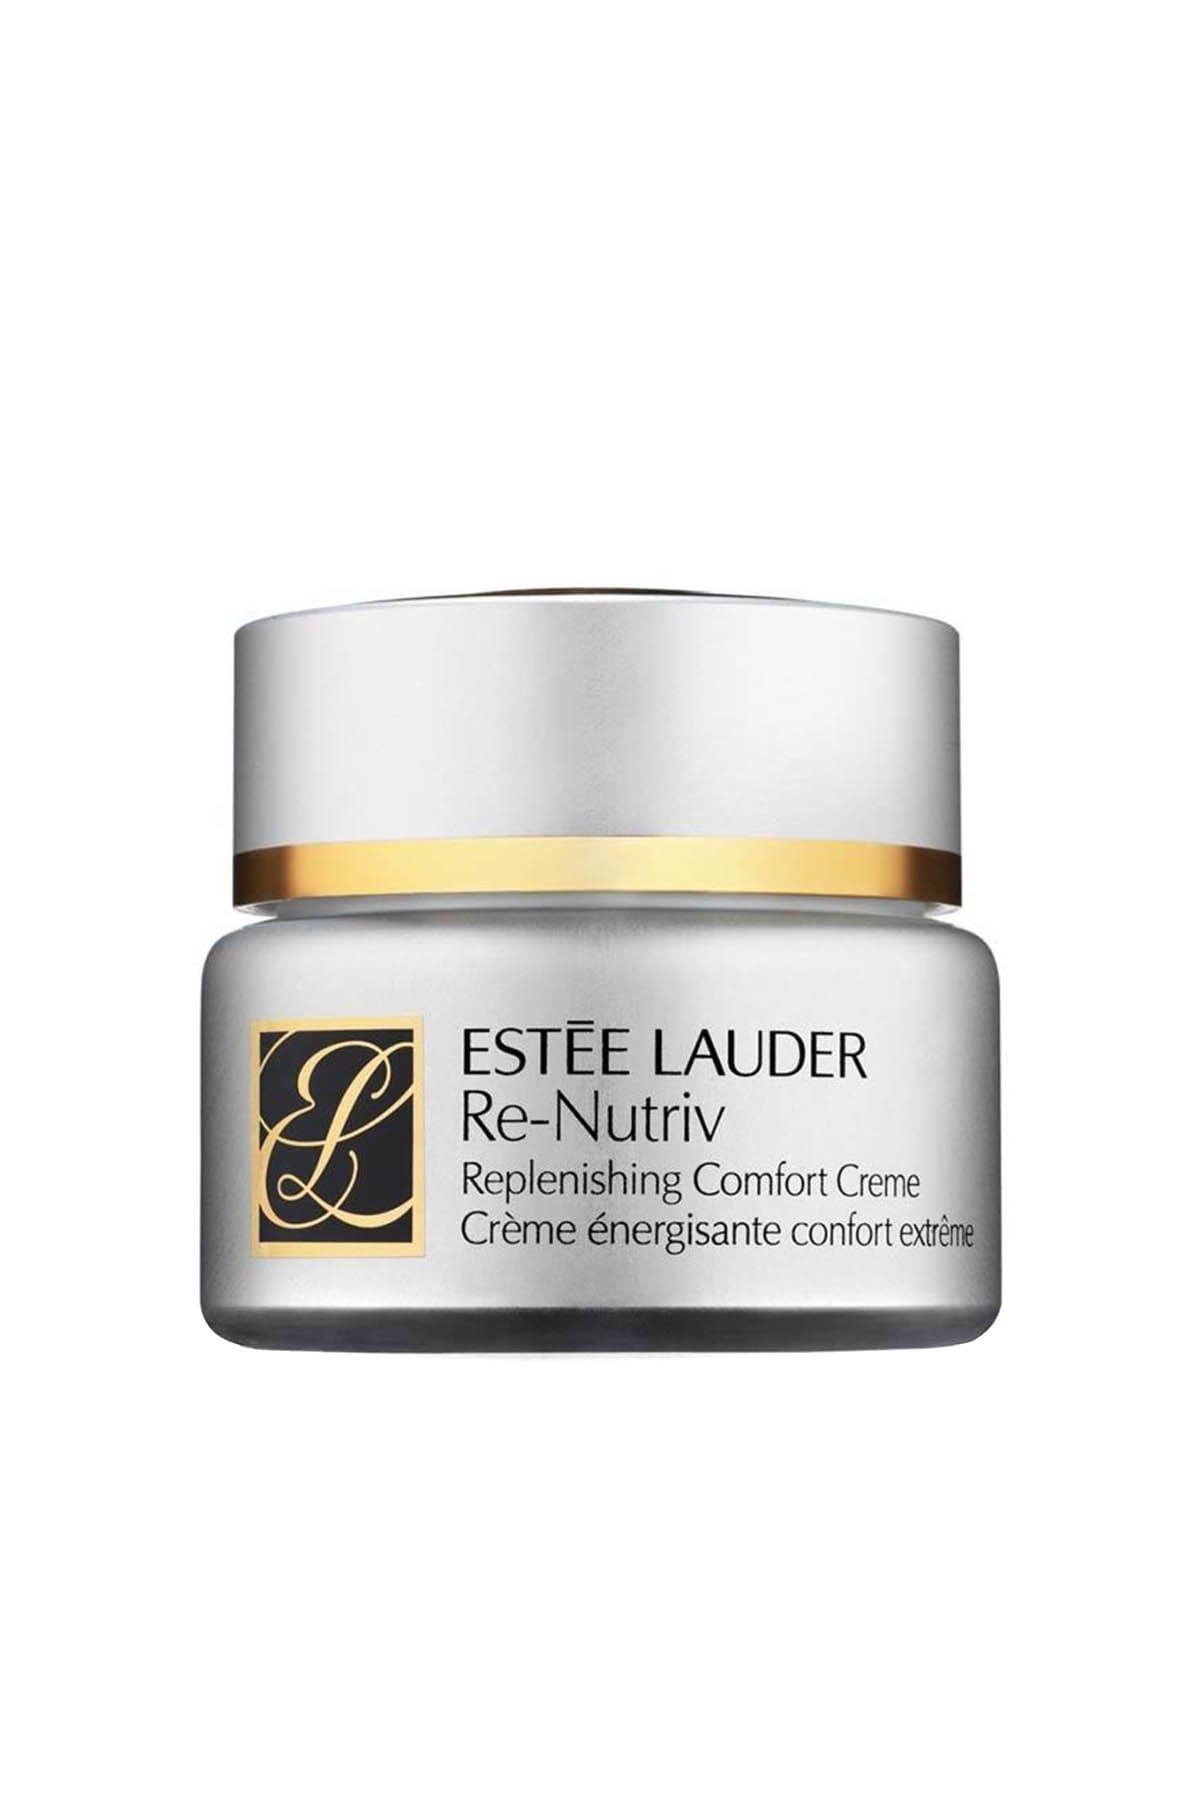 Estee Lauder Yaşlanma Karşıtı Krem - Re-Nutriv Replenishing Comfort Creme 50 ml 027131877356